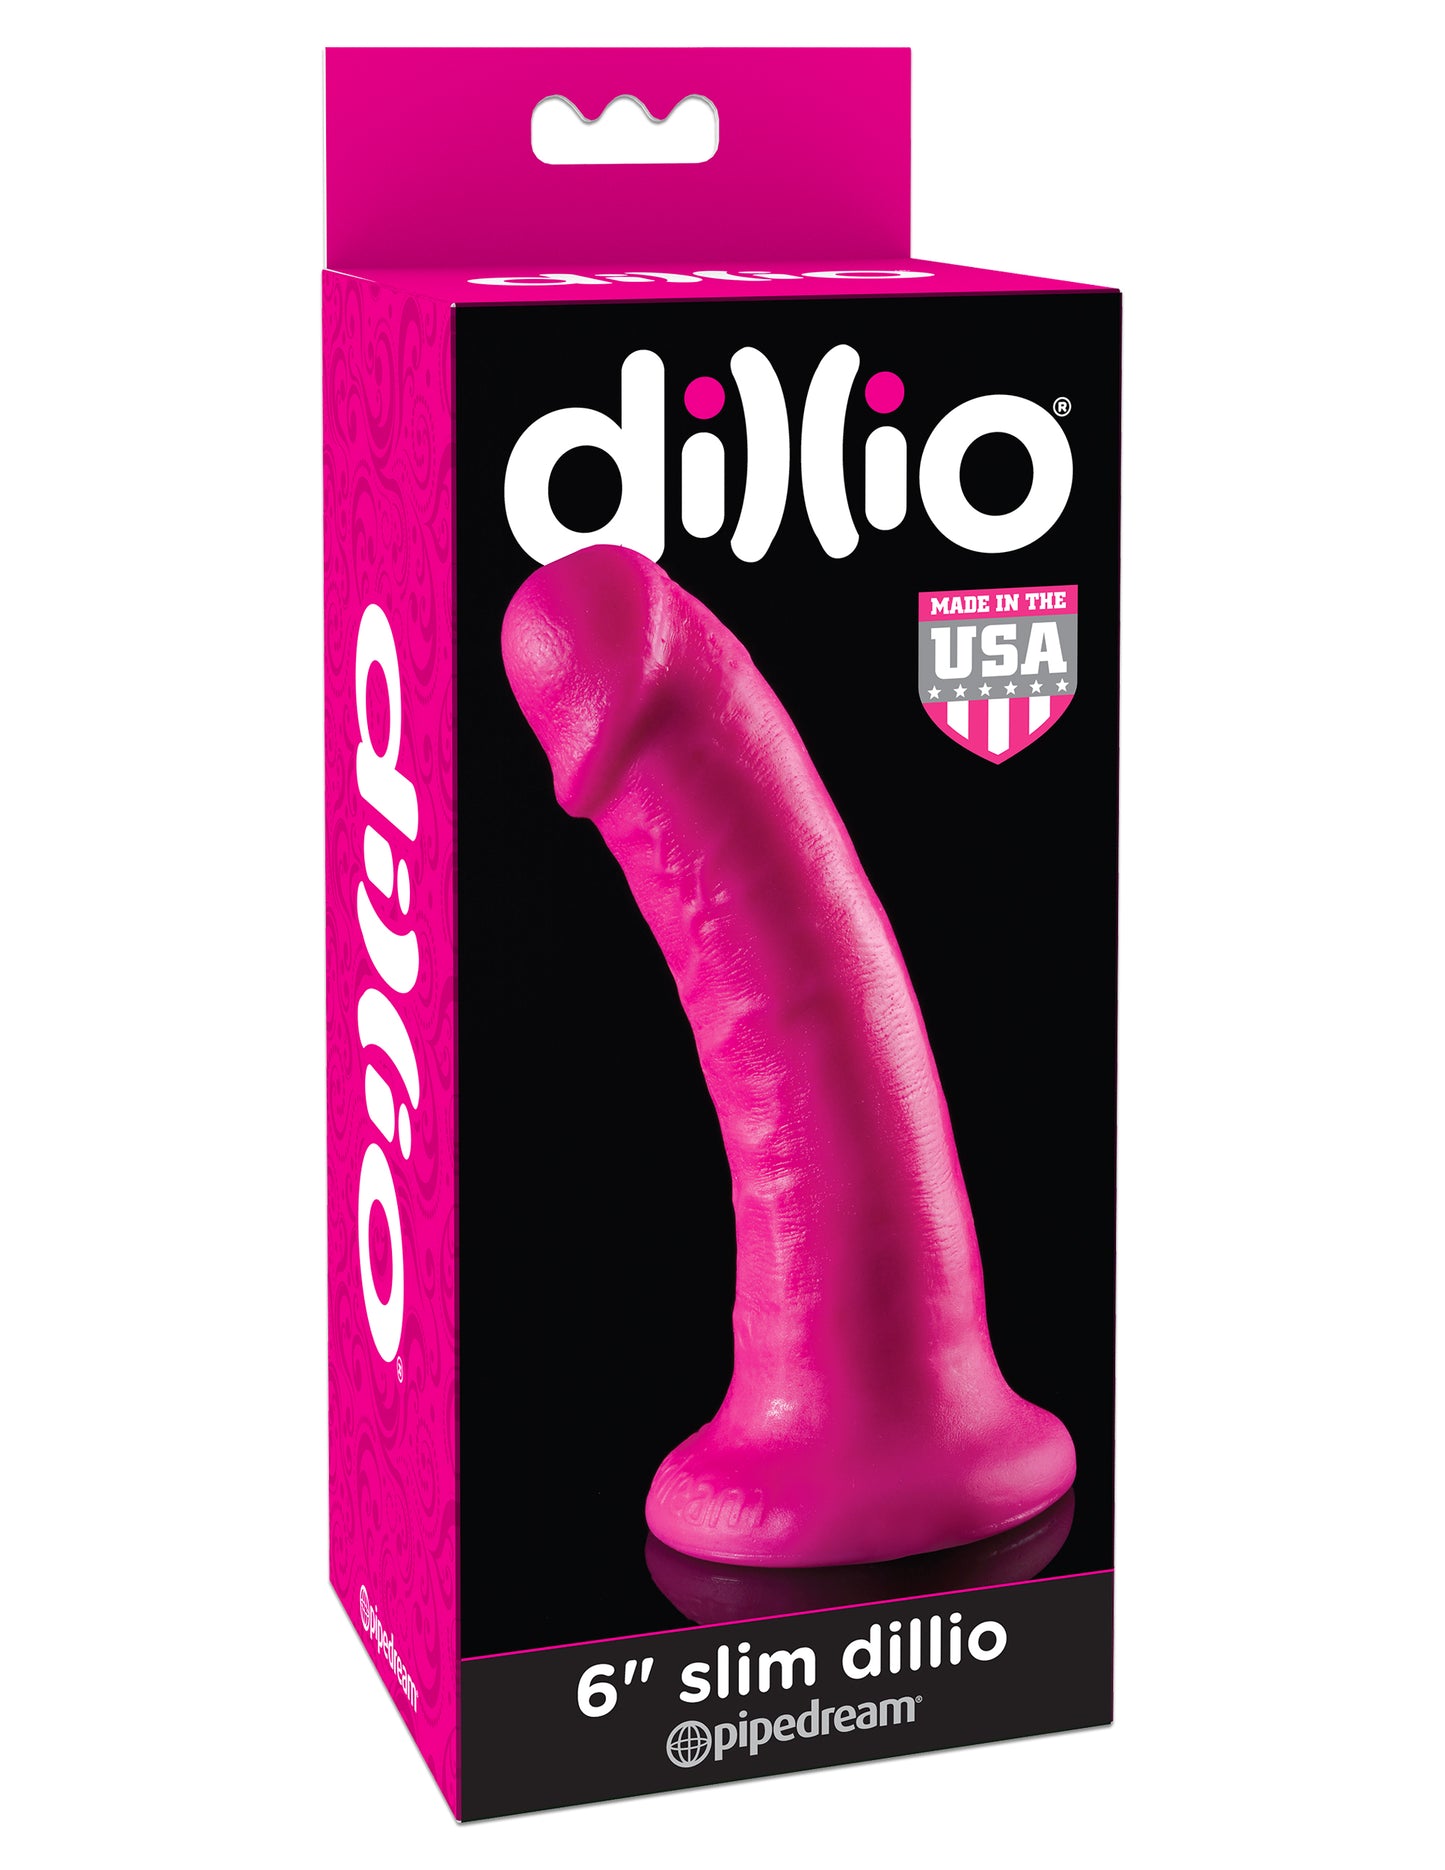 Dillio 6-Inch Slim Dillio PD5305-11